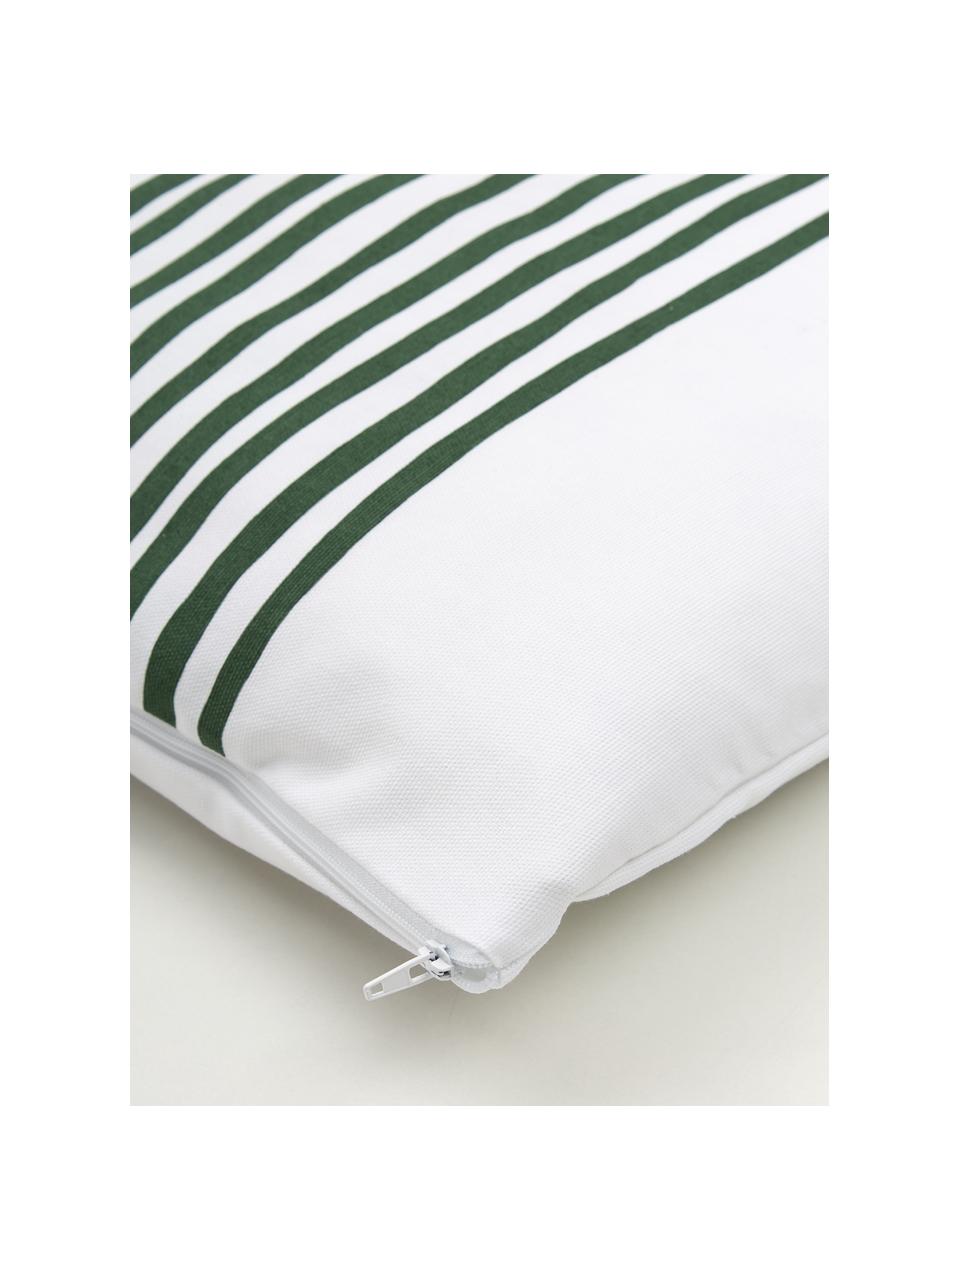 Kissenhülle Corey mit Streifen in Dunkelgrün/Weiß, 100% Baumwolle, Weiß, Dunkelgrün, 40 x 40 cm